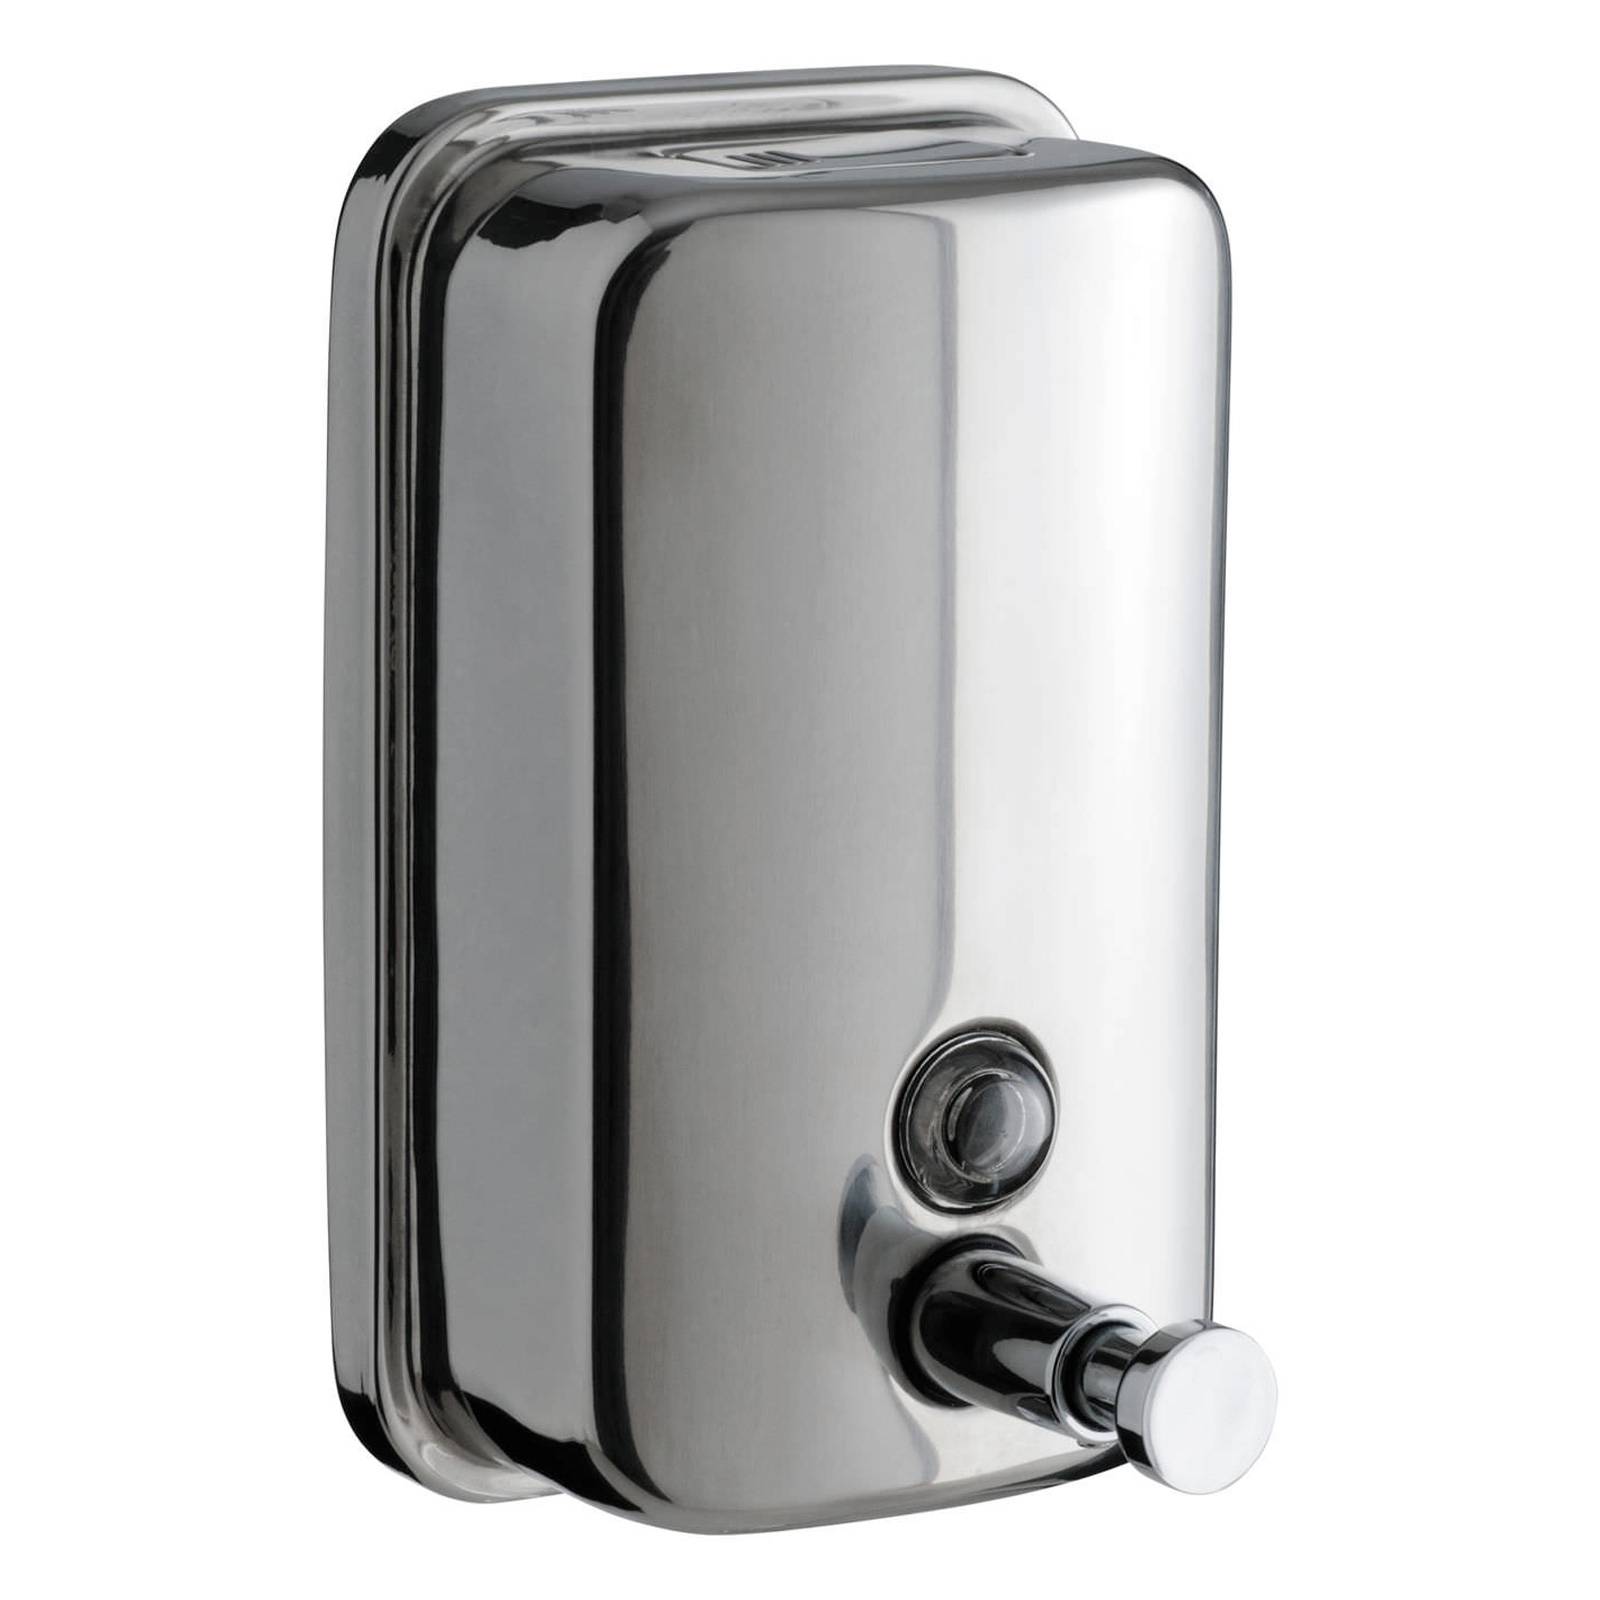 Dergtgh Manuale Capo Singolo erogatore del Sapone della Pompa Dispenser di Sapone in Acciaio Inox per Montaggio a Parete Hand Sanitizer 